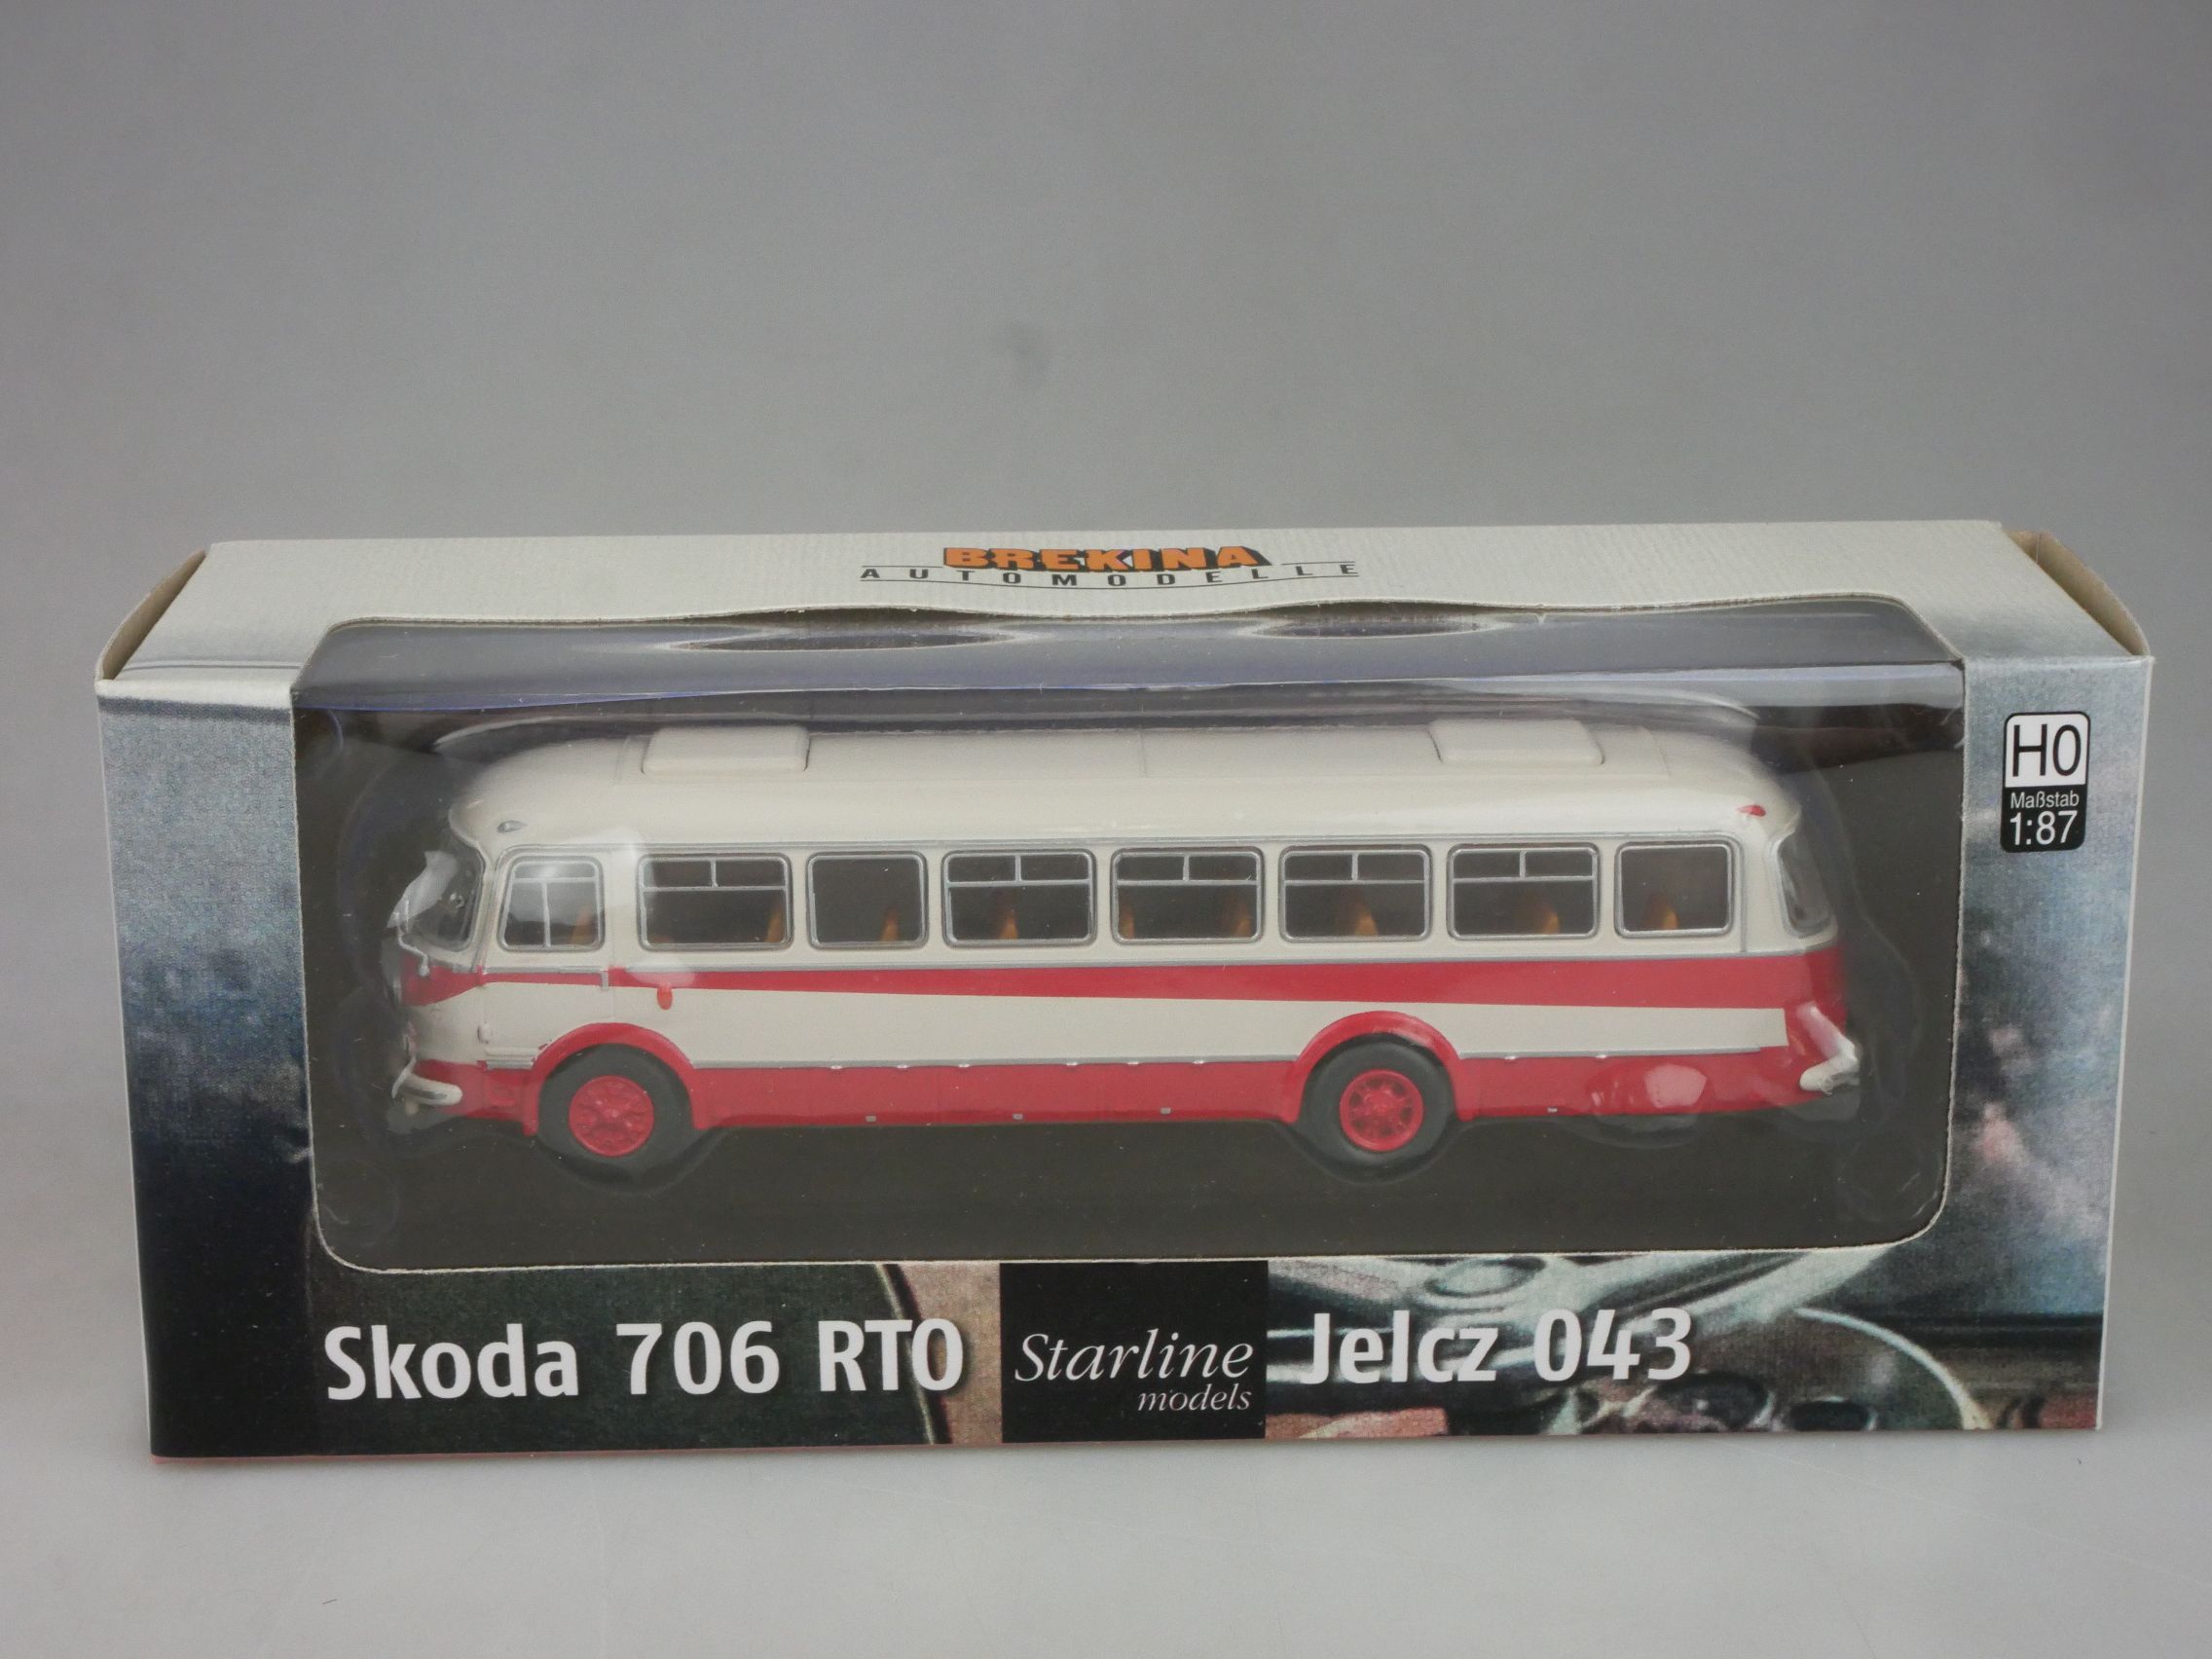 Brekina H0 Skoda 706 RTO Starline Jelcz 043 Bus in Box 126818